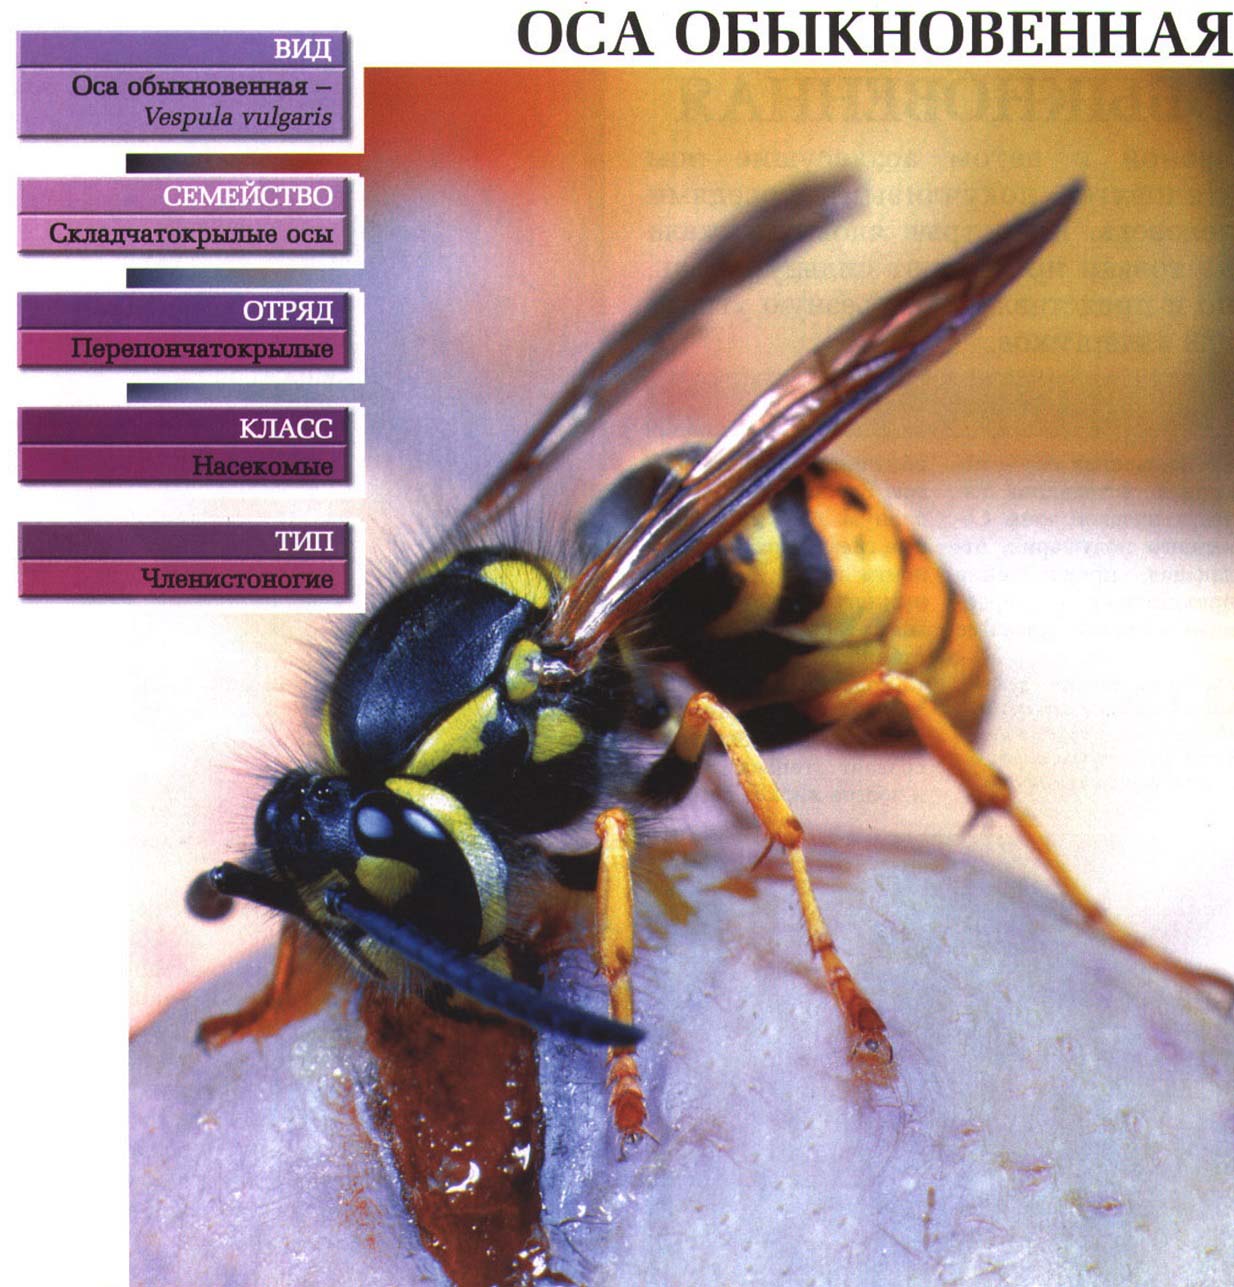 Систематика (научная классификация) осы обыкновенной. Vespula vulgaris.